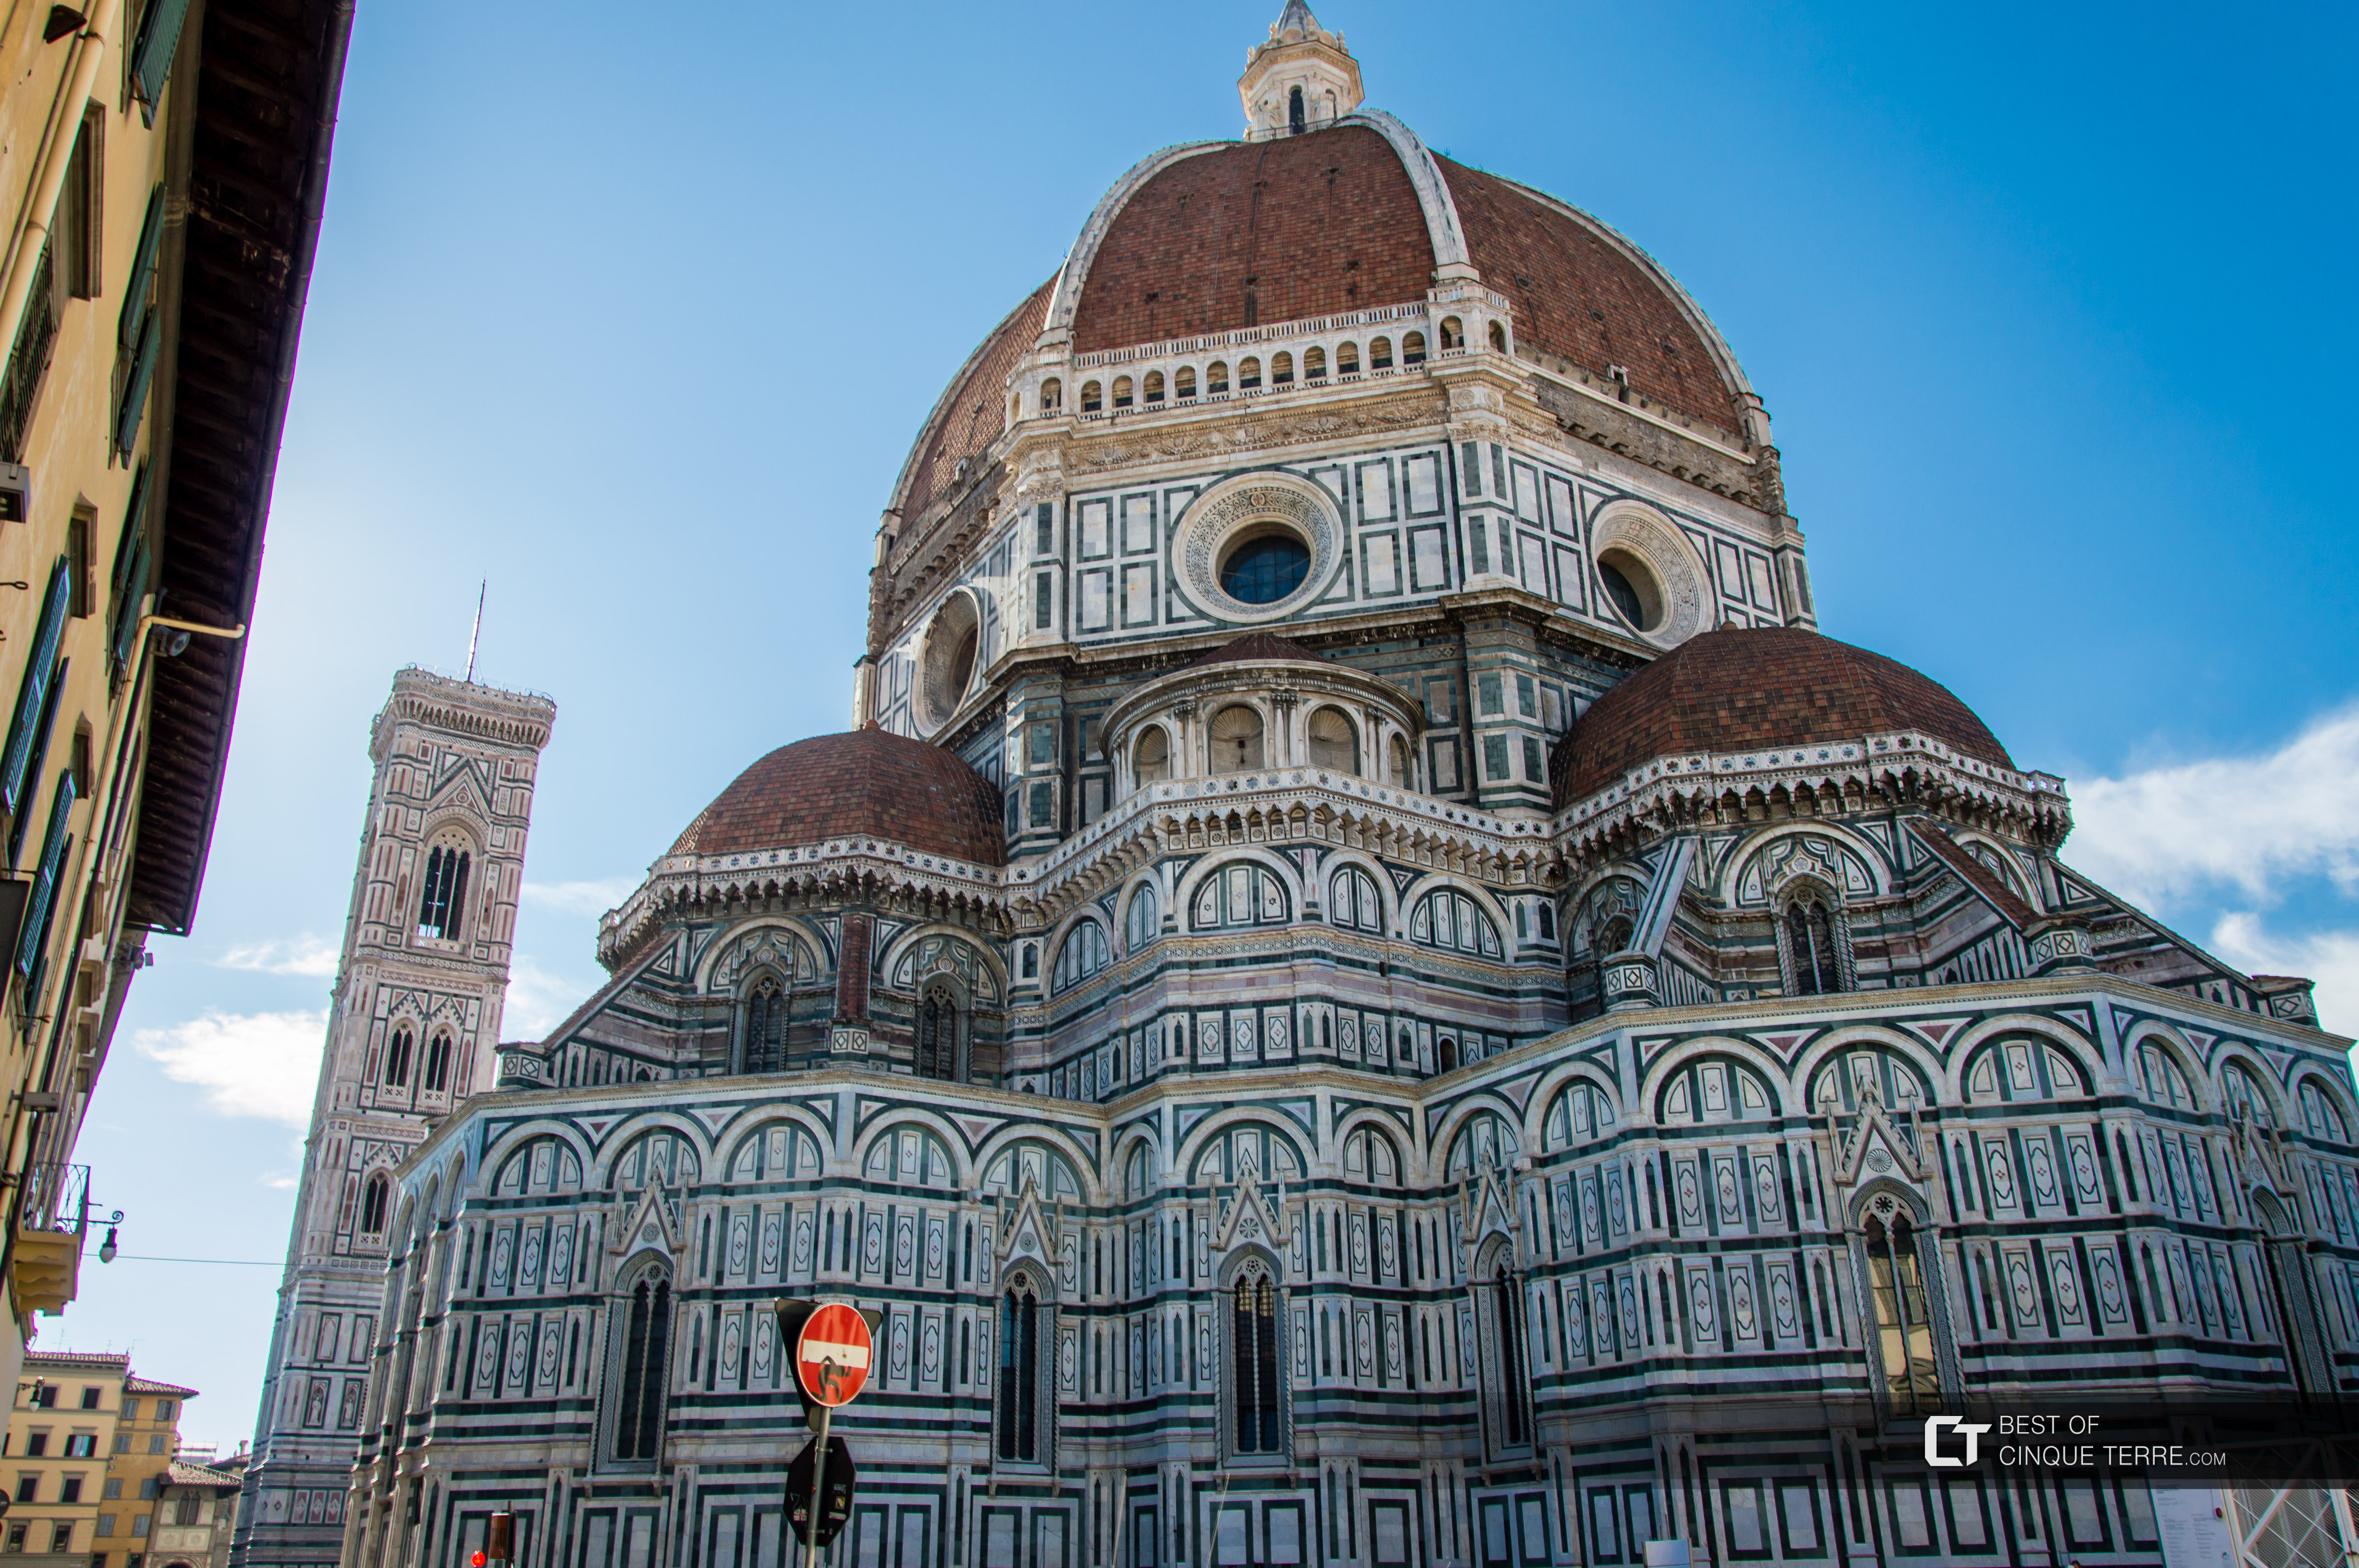 Die Kuppel der Kathedrale Santa Maria del Fiore und der Kirchturm von Giotto, Florenz, Italien